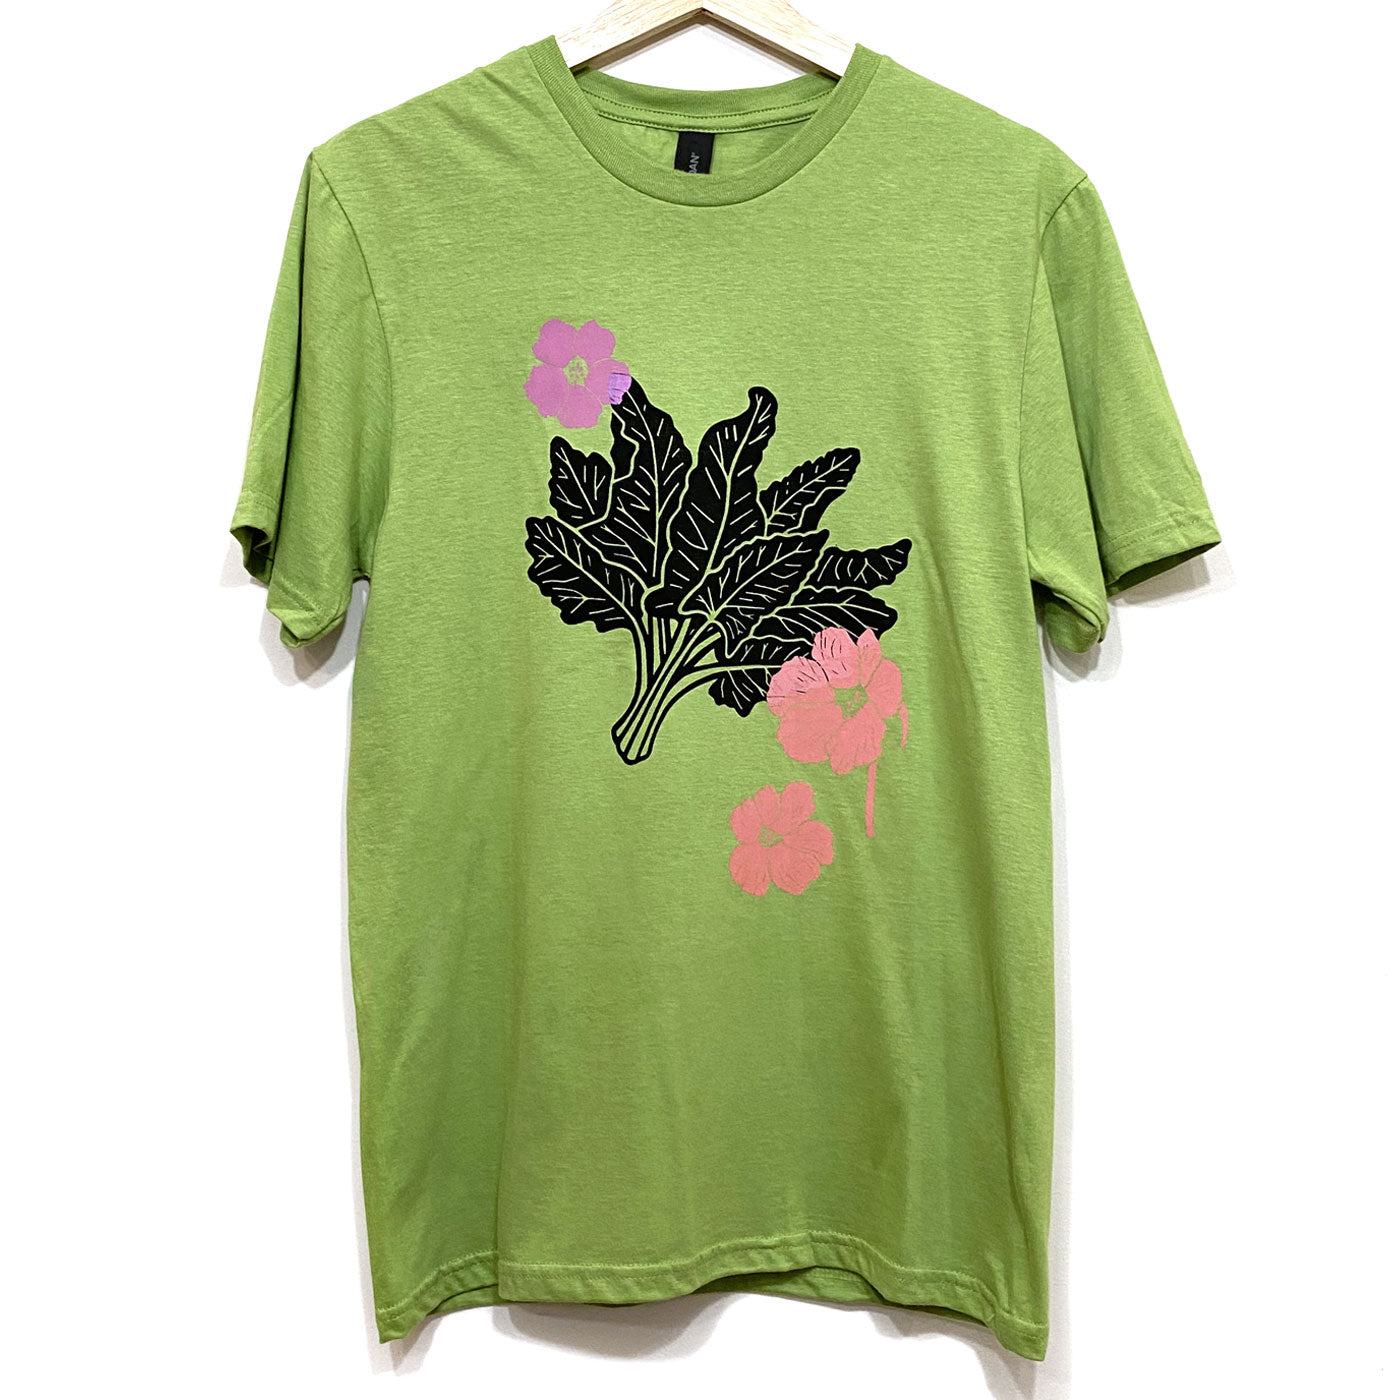 Chard and Nasturtium on Green T-Shirt